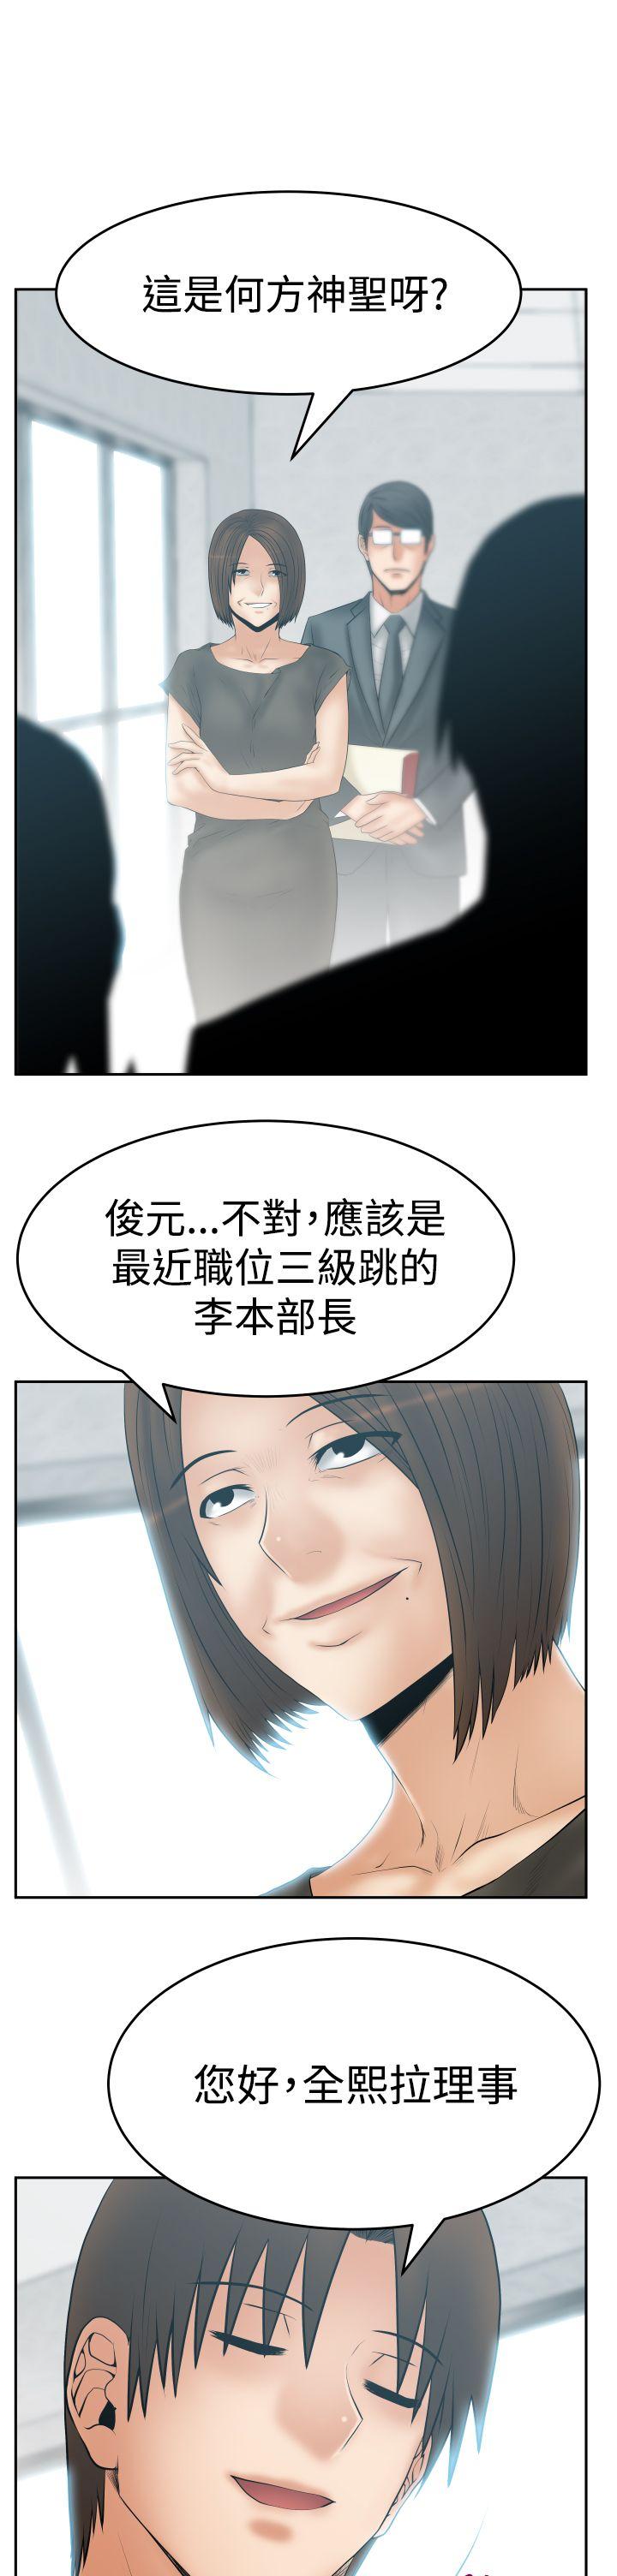 韩国污漫画 MY OFFICE LADYS 第3季-第24话 3